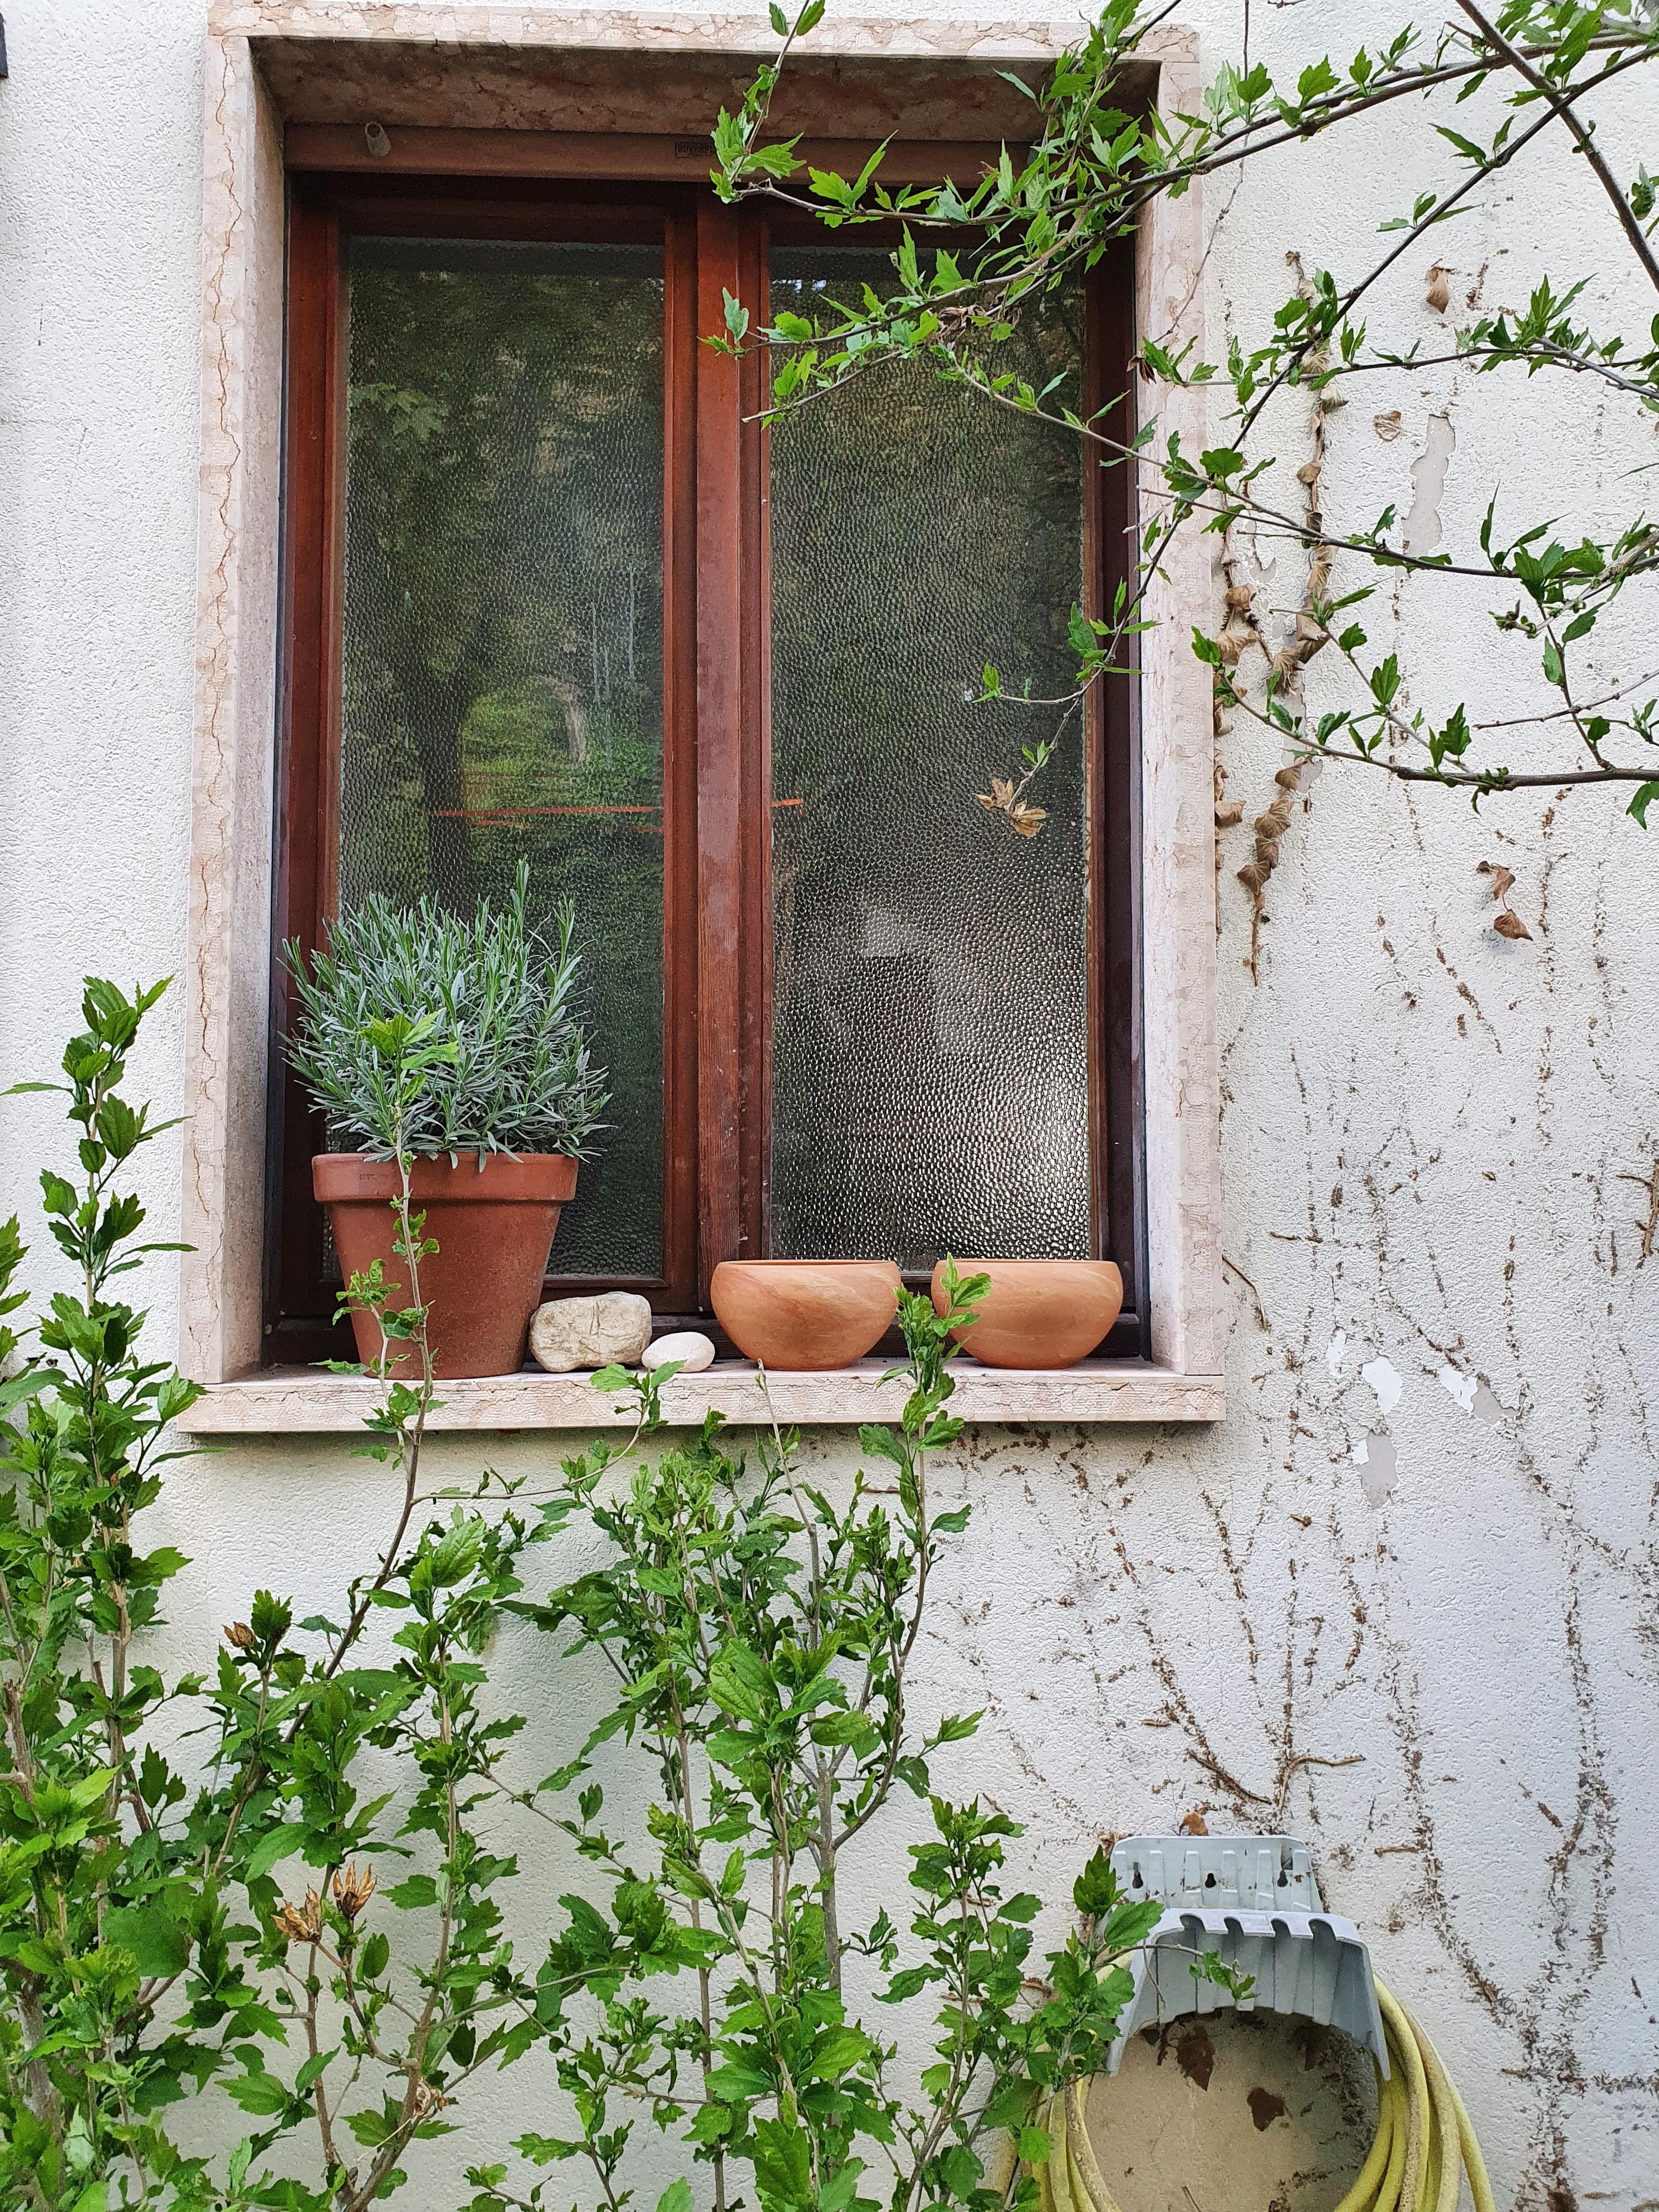 Italienische Fenster.... #detailverliebt #altbau #couchstyle #italien #couchliebt #gartenliebe